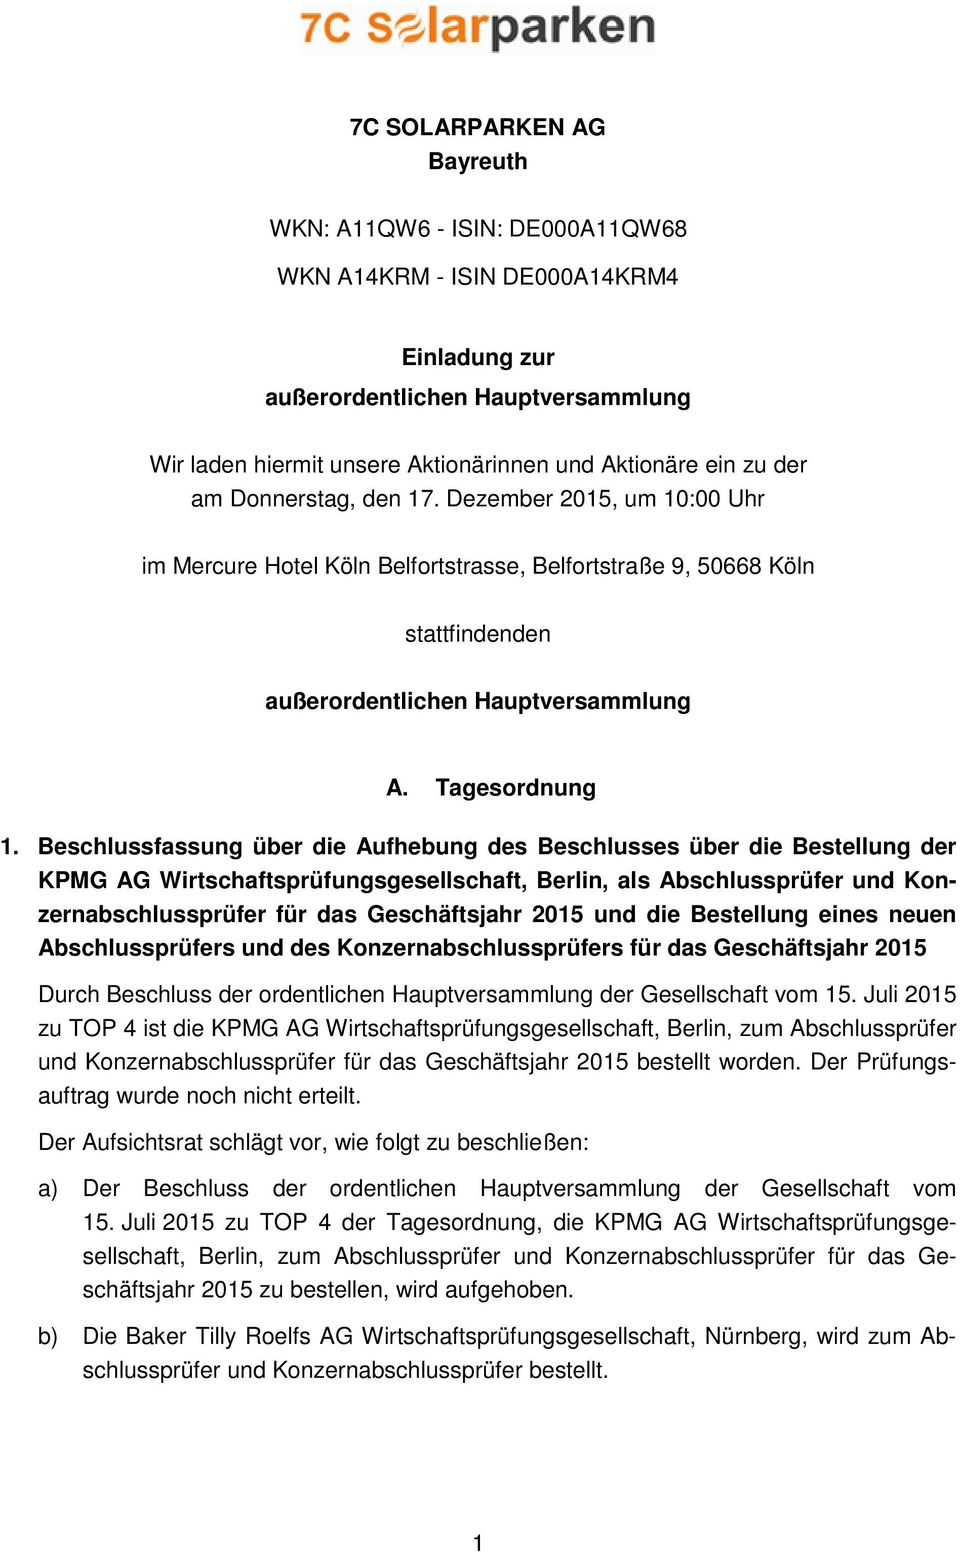 Beschlussfassung über die Aufhebung des Beschlusses über die Bestellung der KPMG AG Wirtschaftsprüfungsgesellschaft, Berlin, als Abschlussprüfer und Konzernabschlussprüfer für das Geschäftsjahr 2015